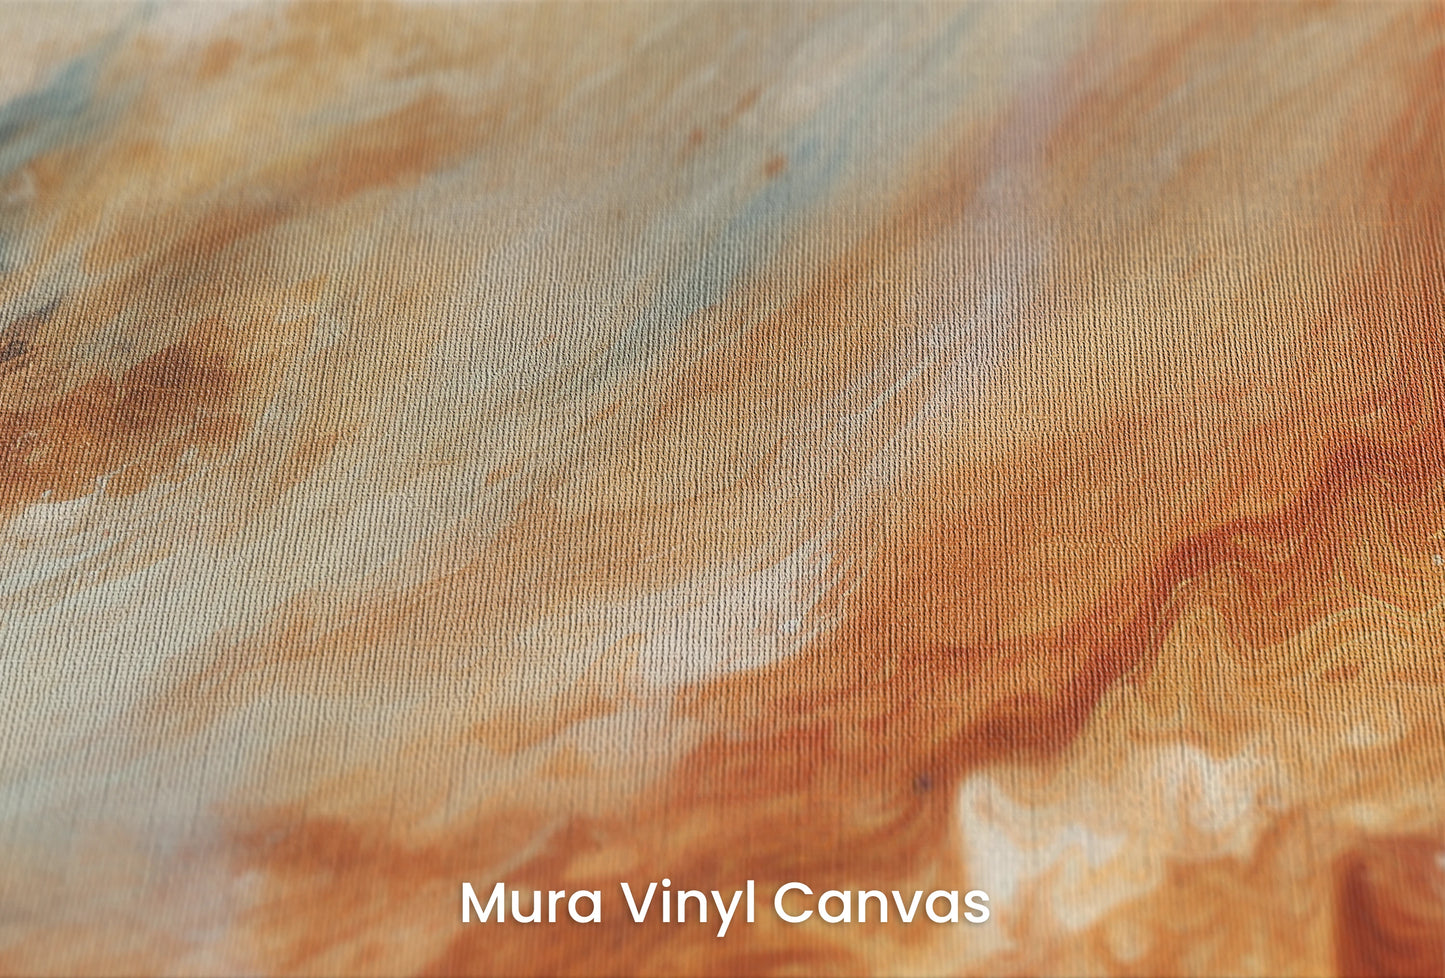 Zbliżenie na artystyczną fototapetę o nazwie Jupiter's Glow na podłożu Mura Vinyl Canvas - faktura naturalnego płótna.